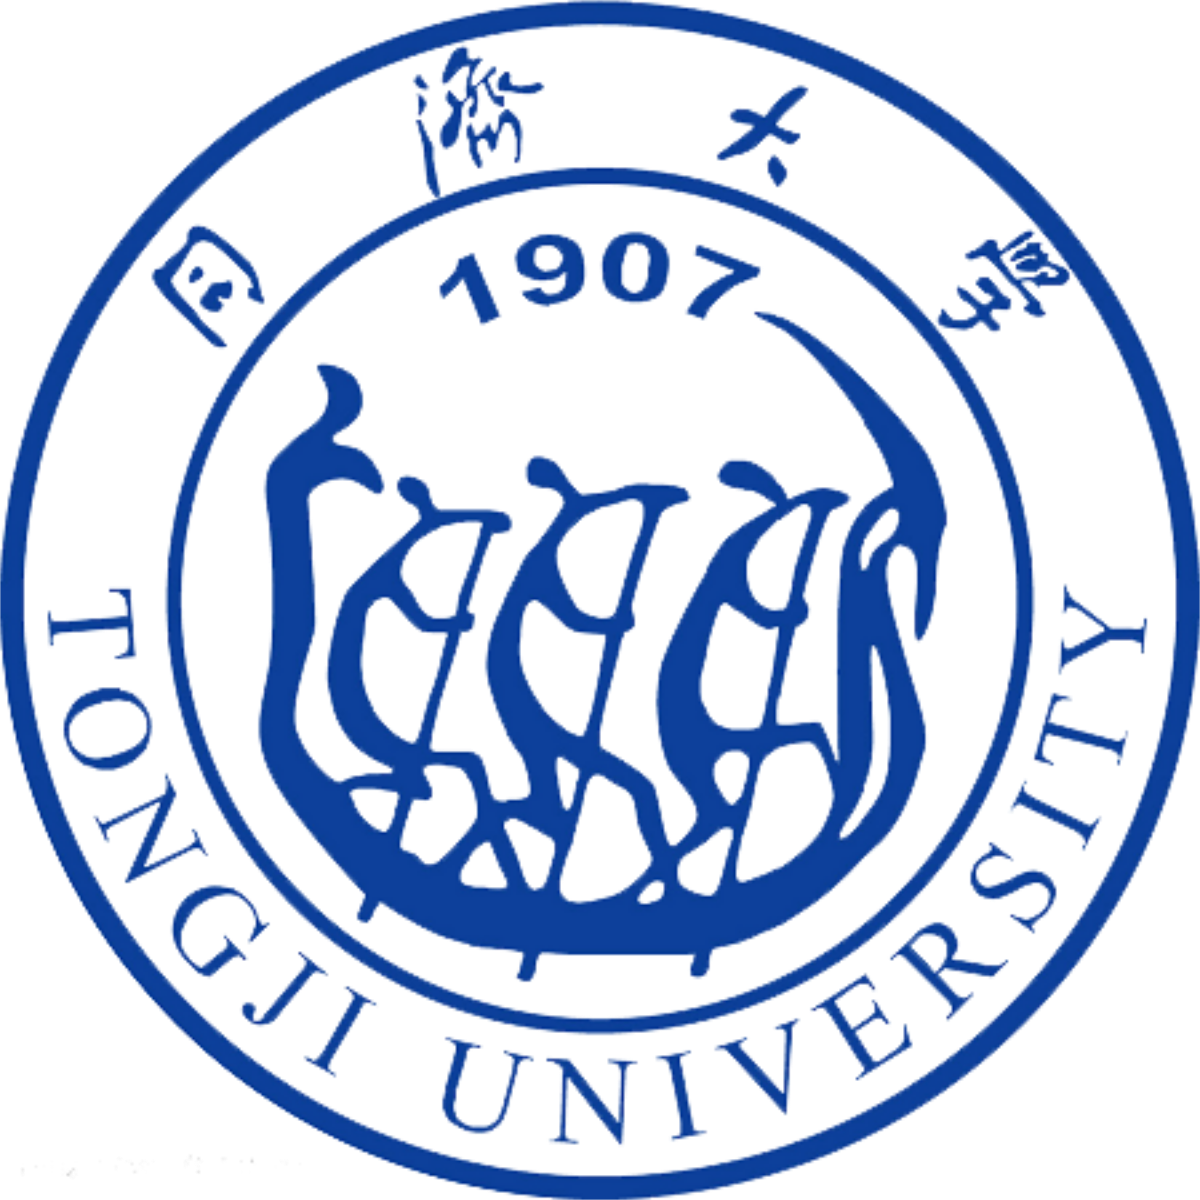 Tongji University emblem